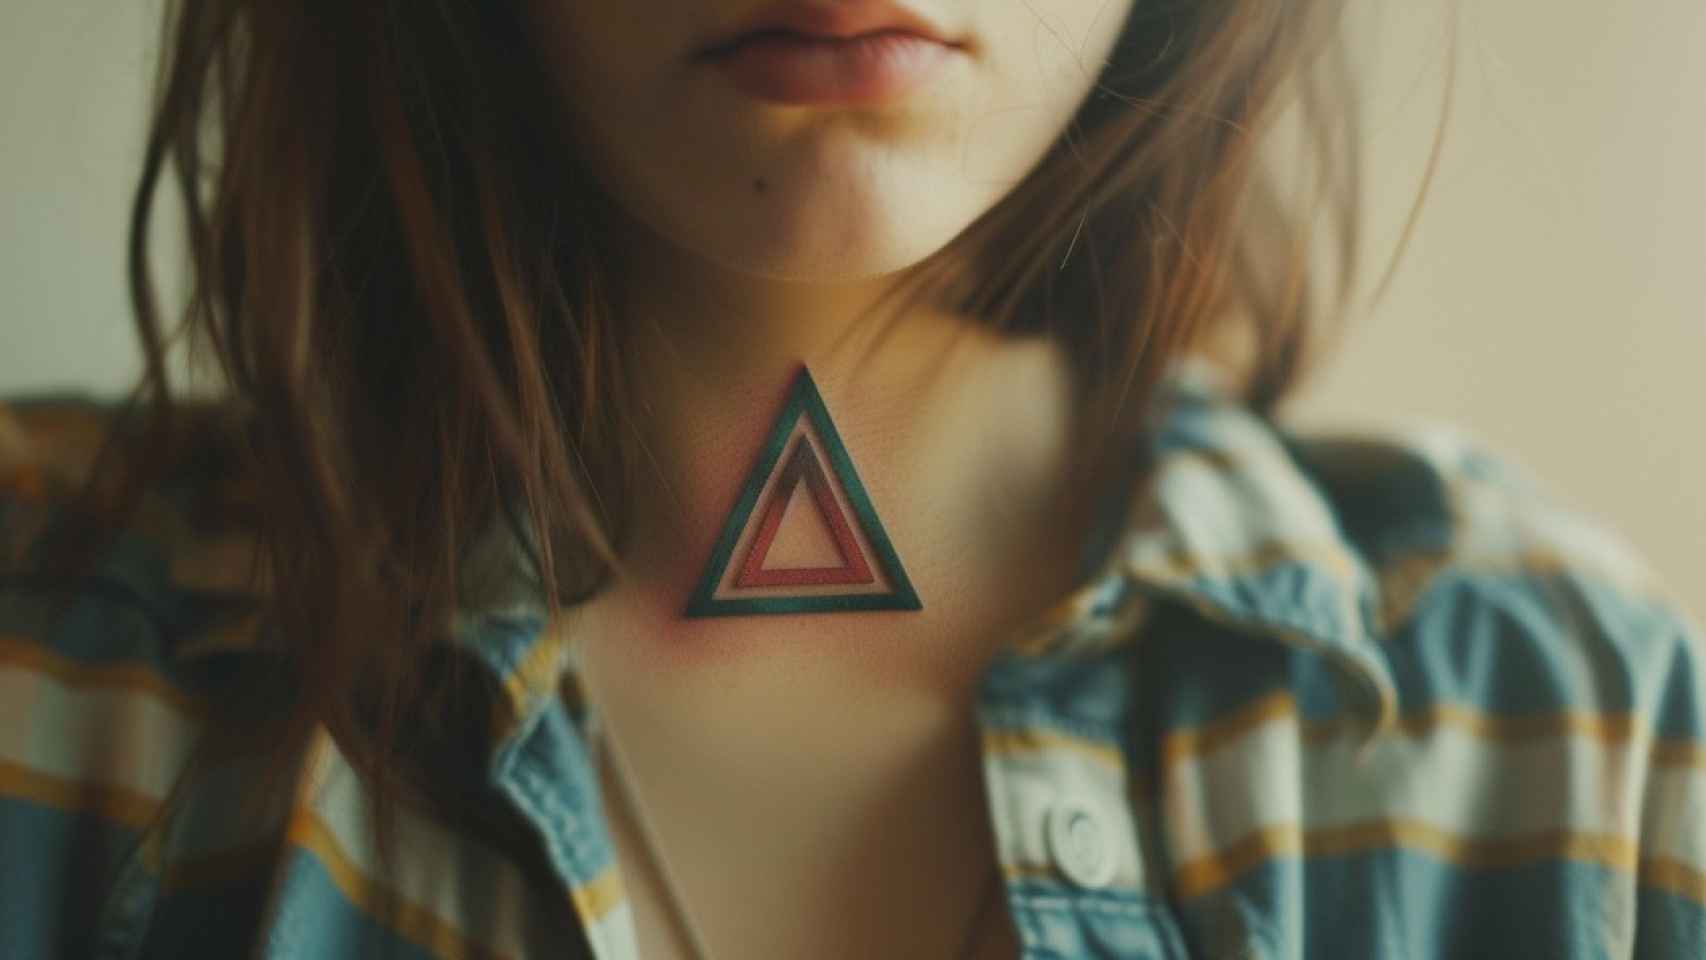 Tatuaje de triángulos